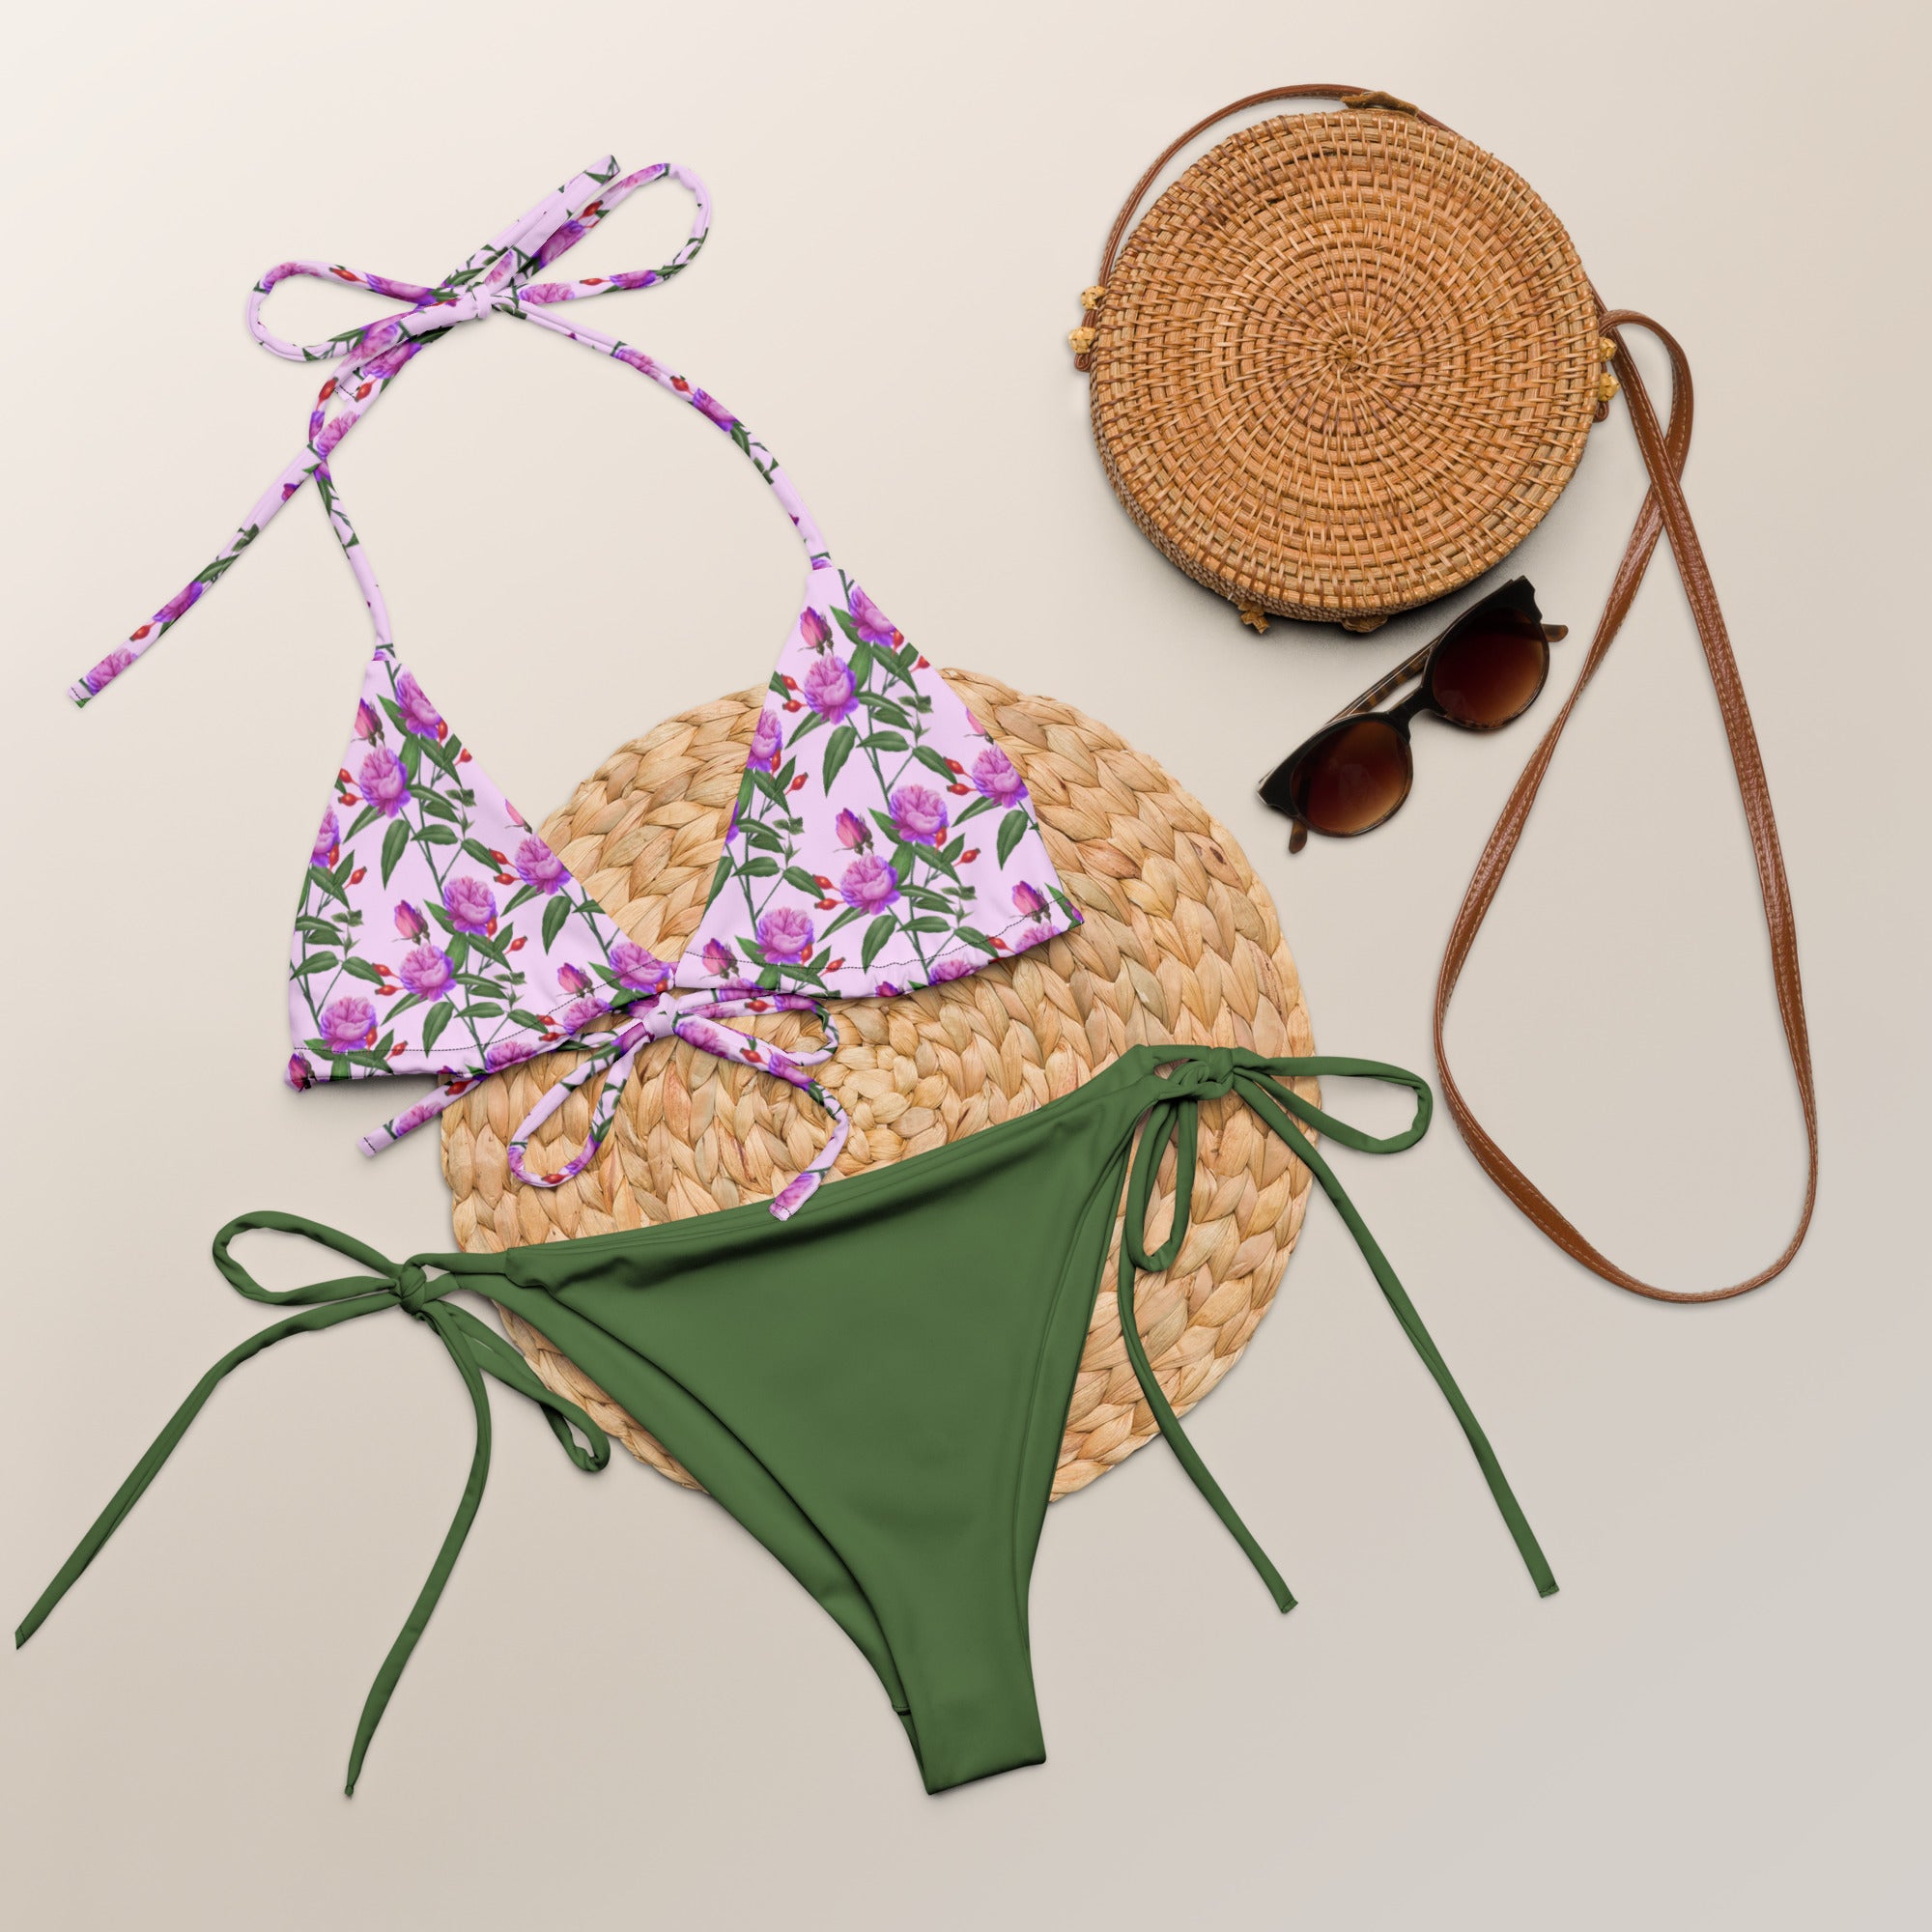 "Lavender" String Bikini